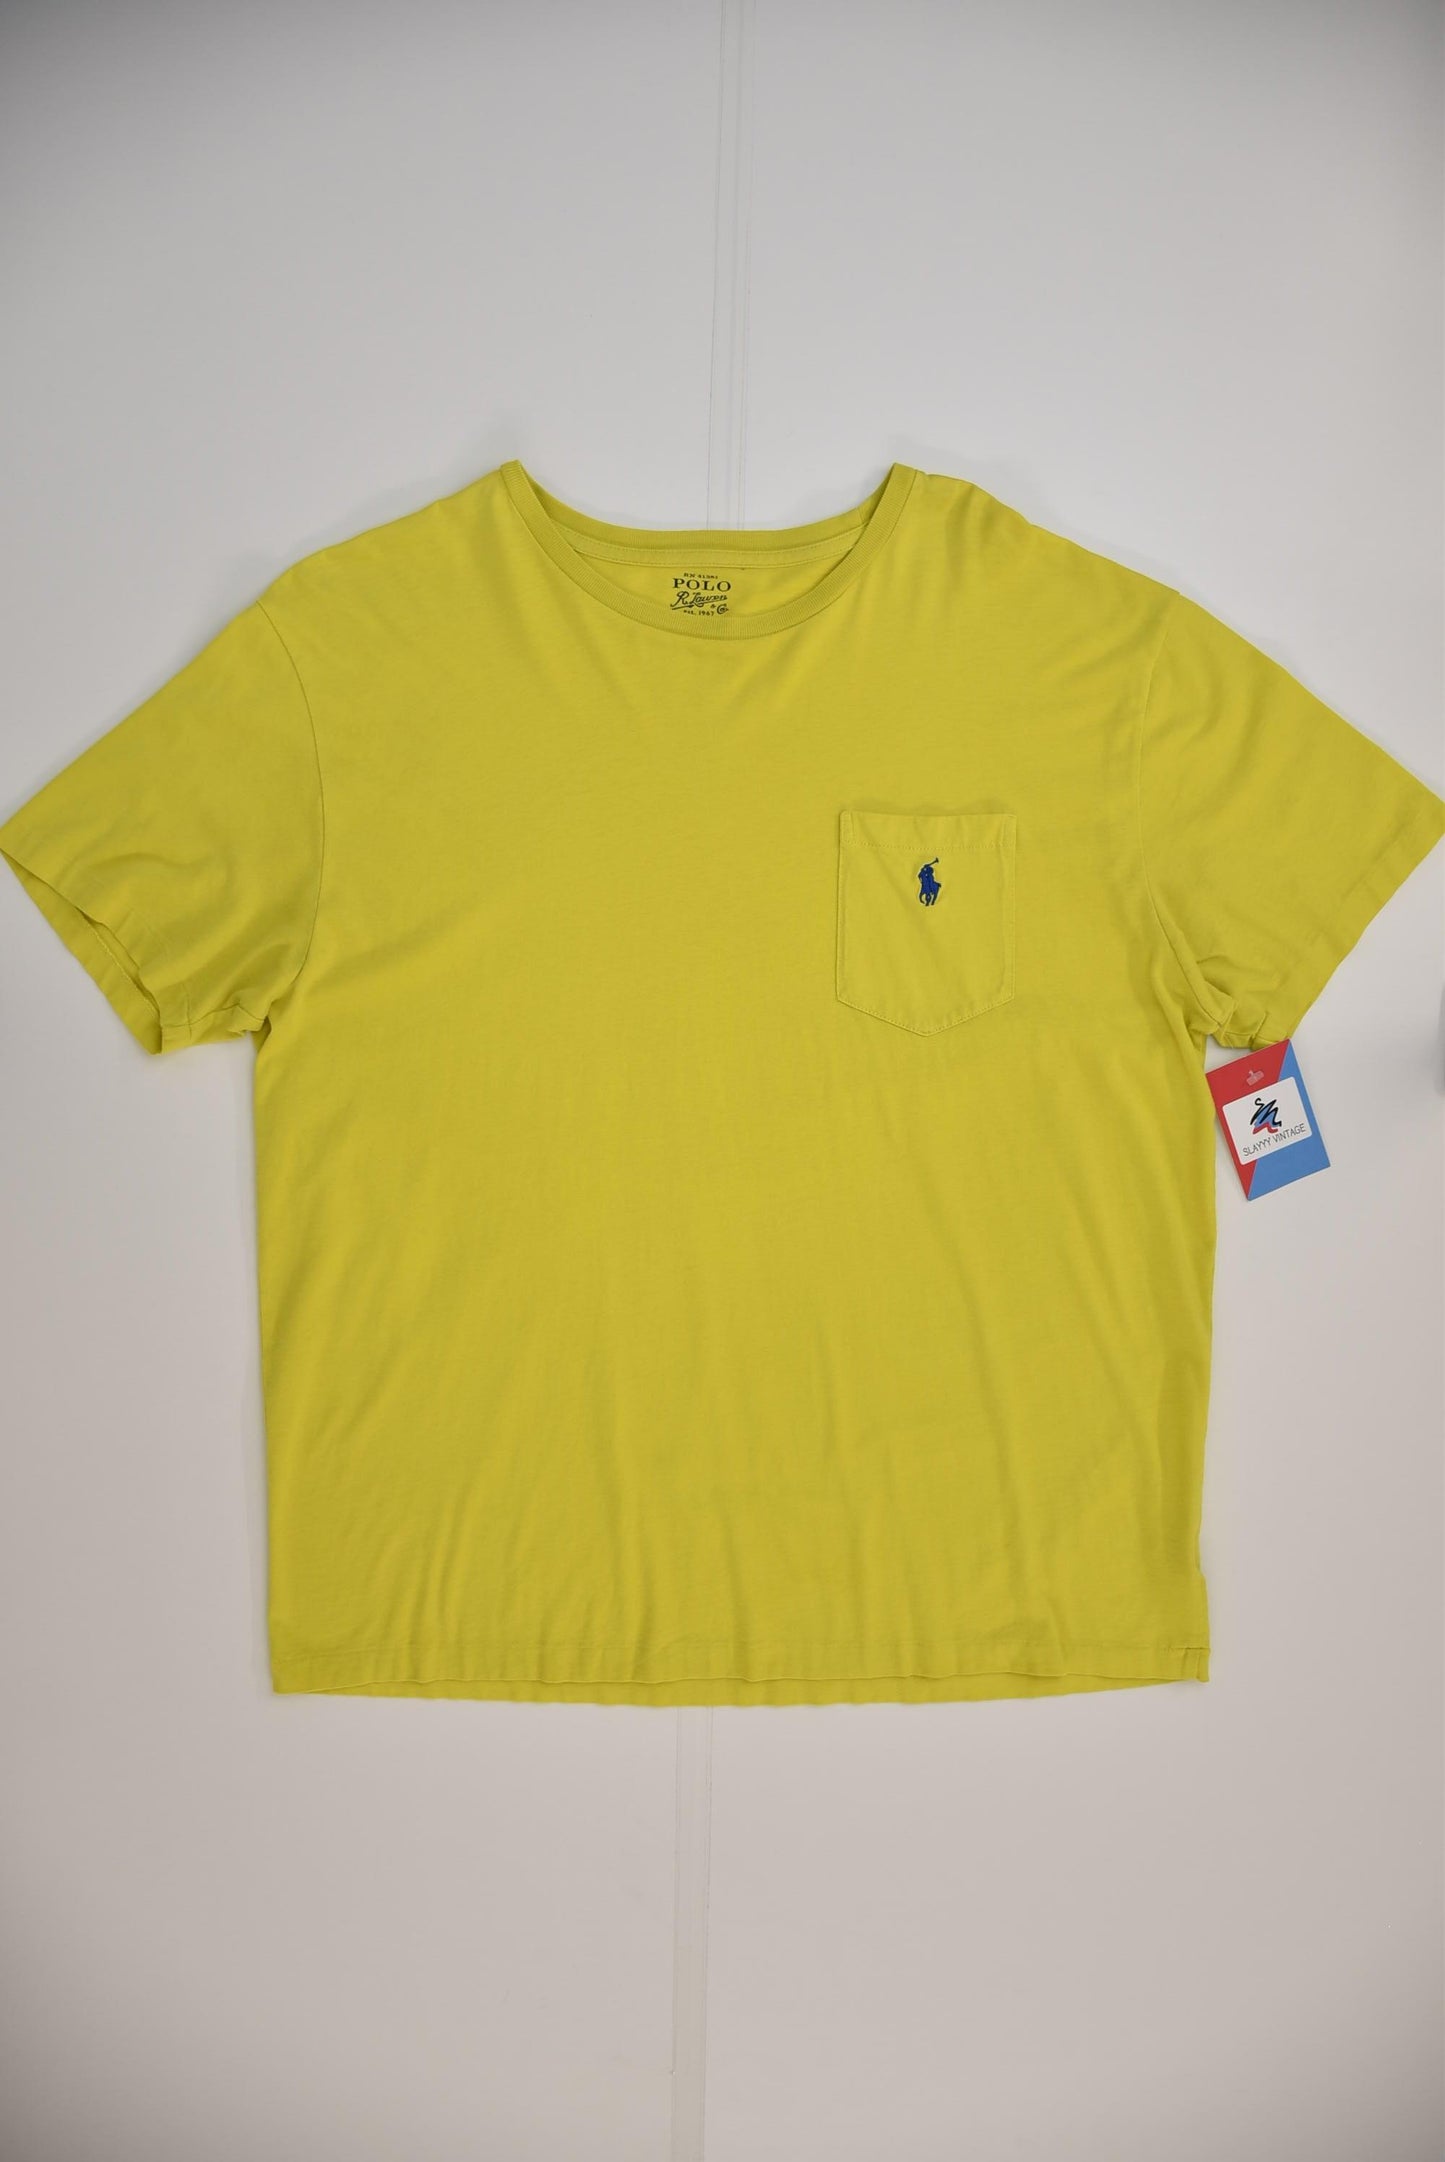 Polo Ralph Lauren T-shirt (L)